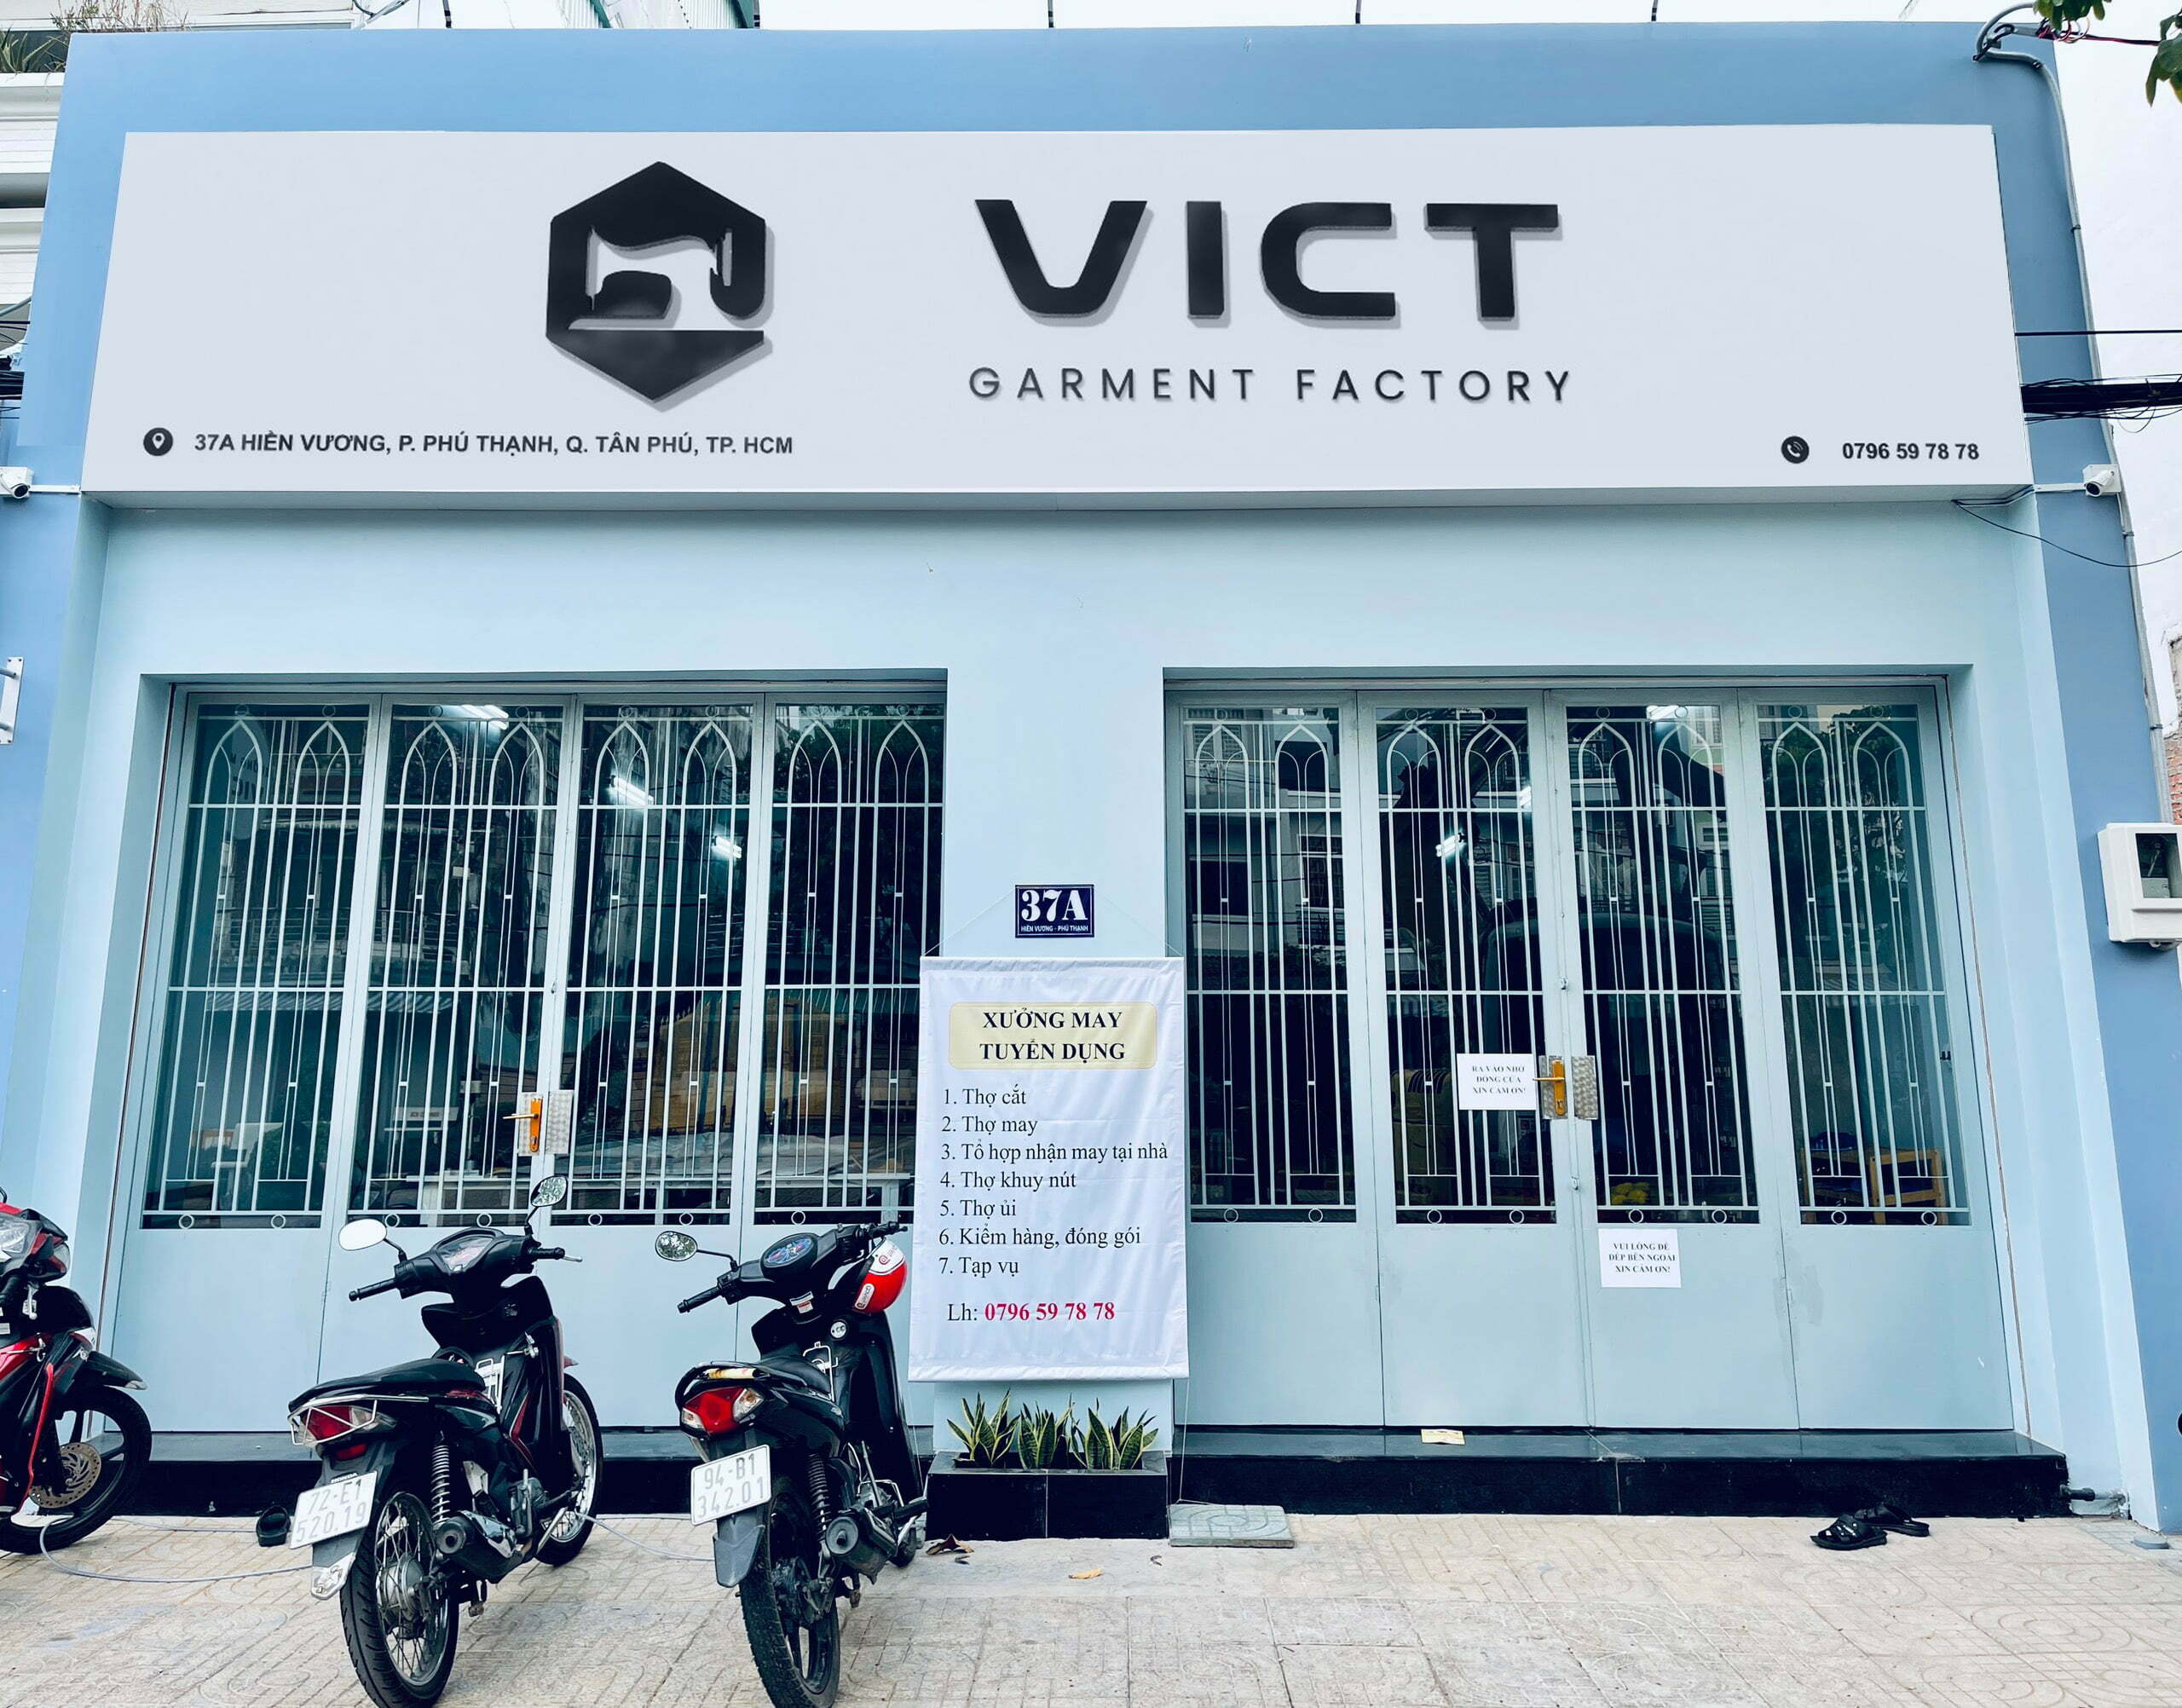 Xưởng may VICT - xưởng may quần áo Đà Nẵng và trên toàn nước Việt Nam 